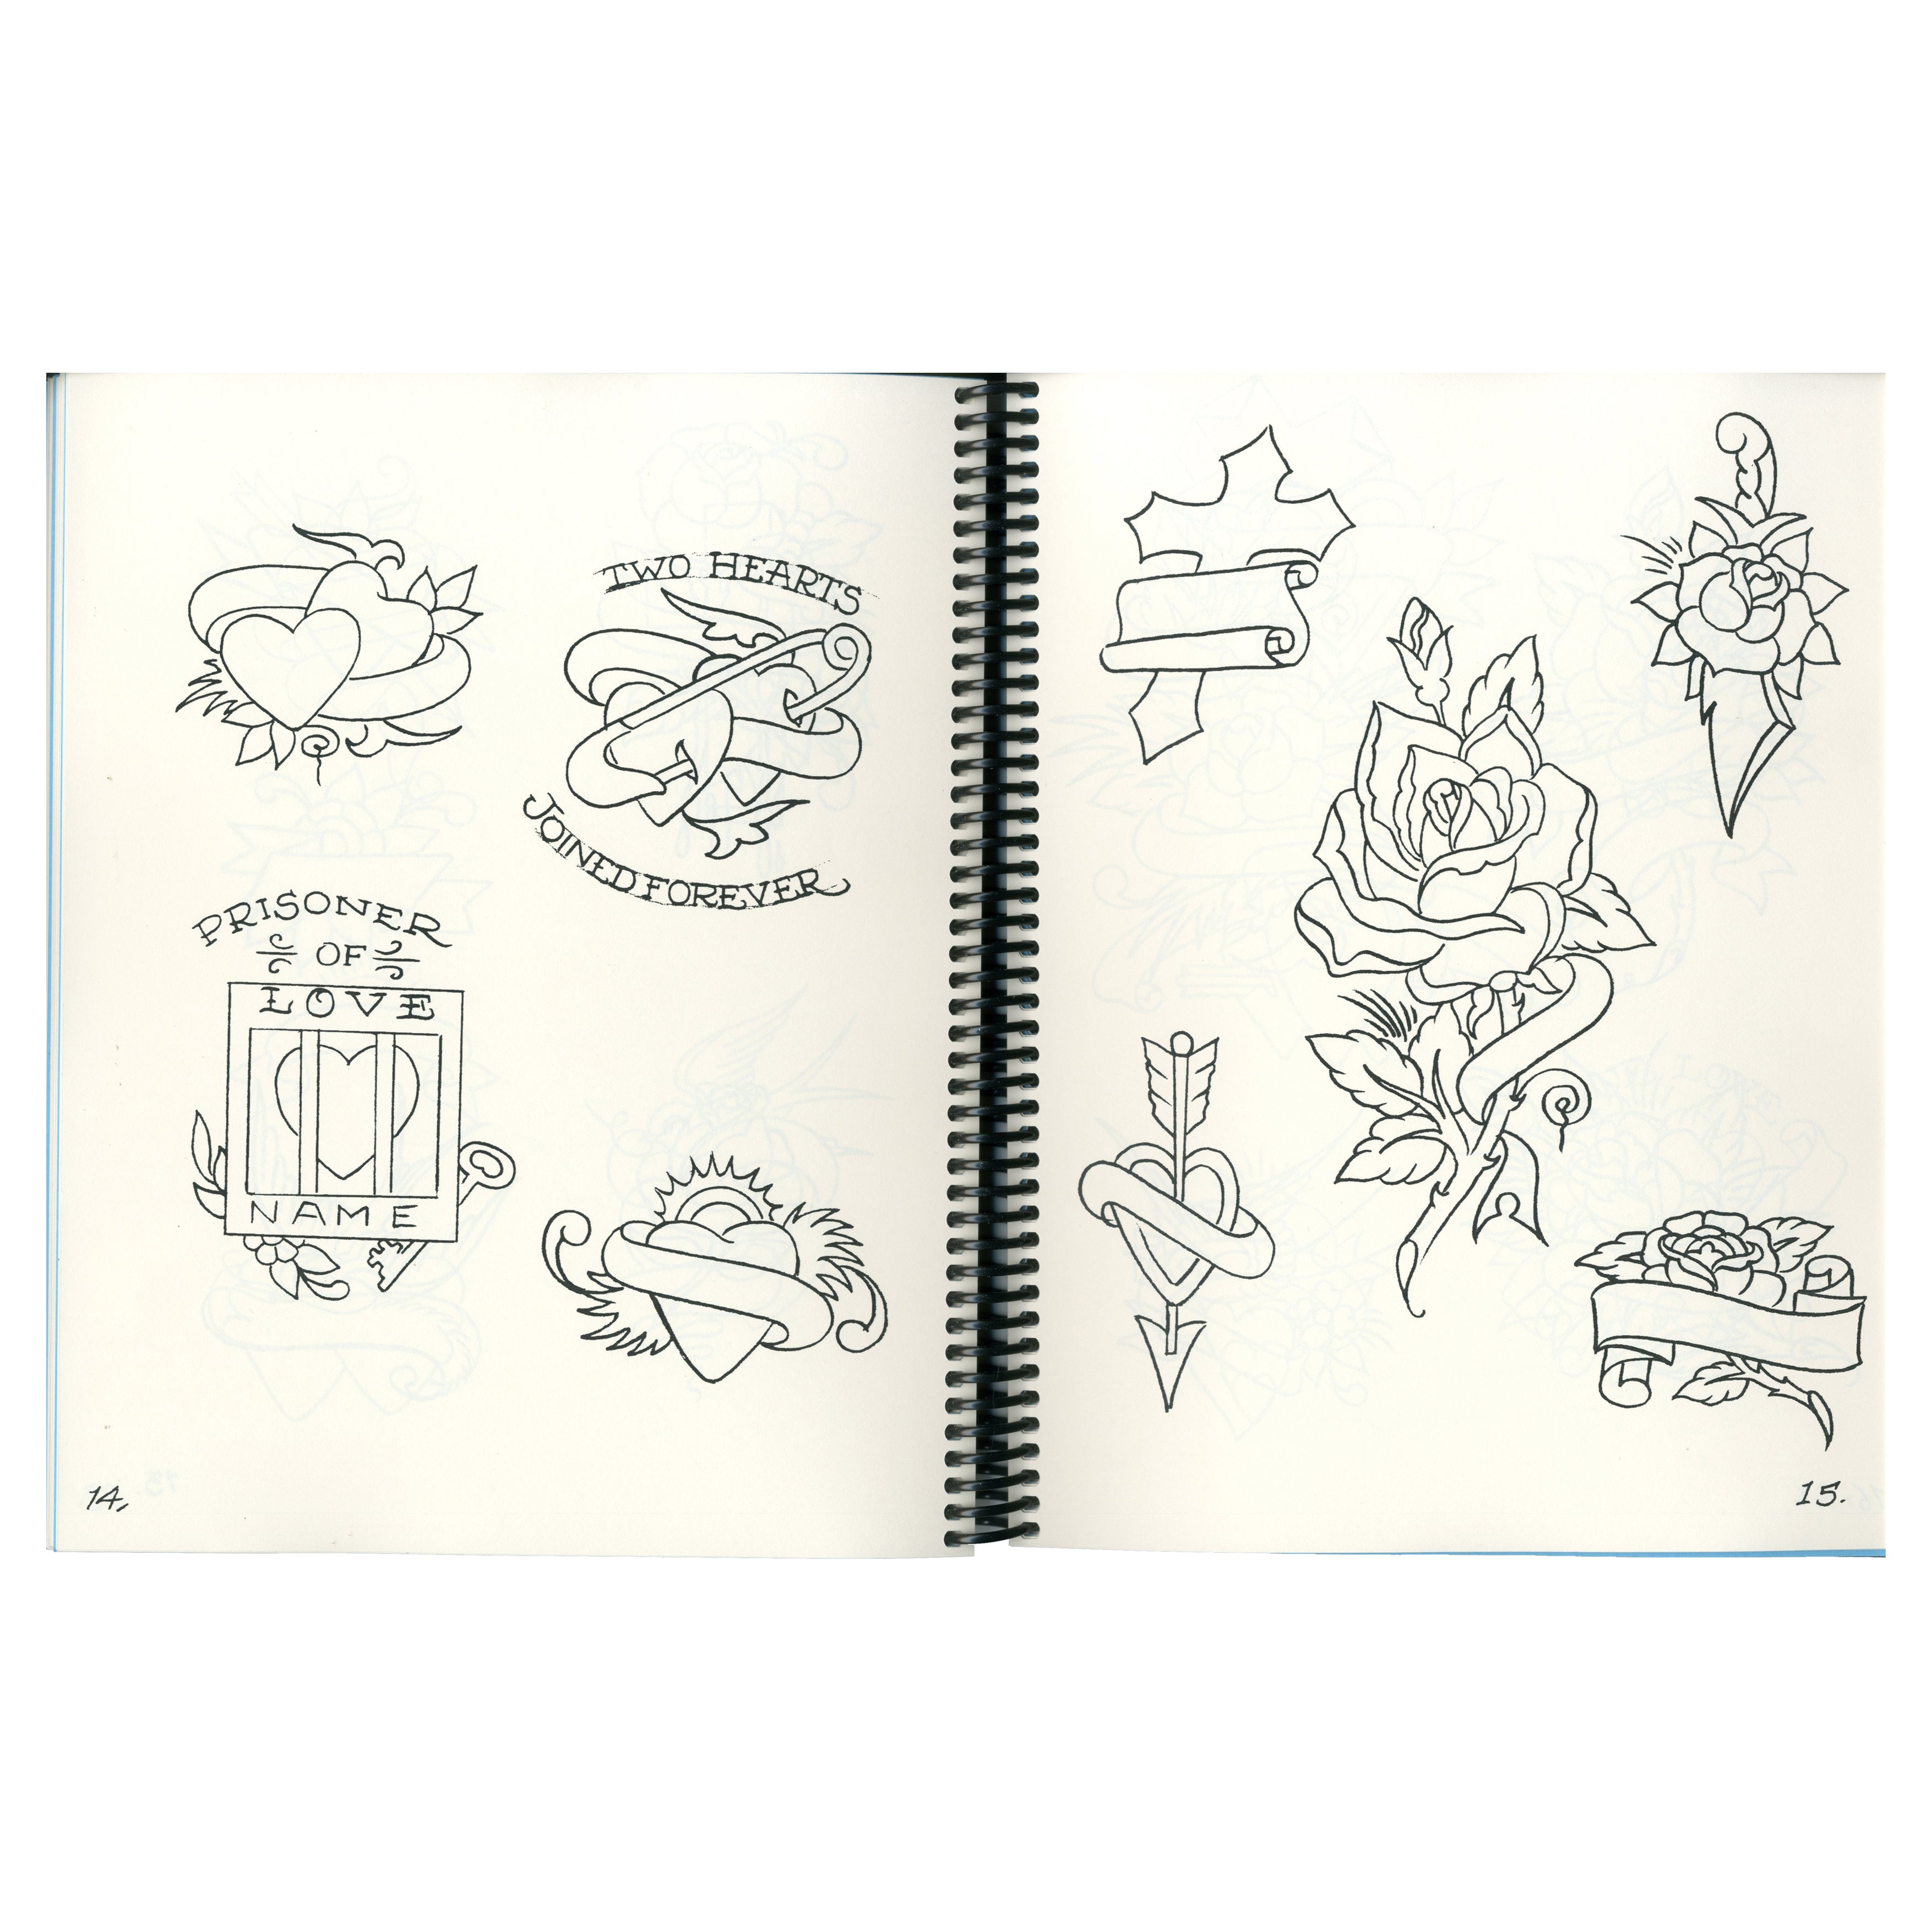 Sailor Jerry Sketchbook